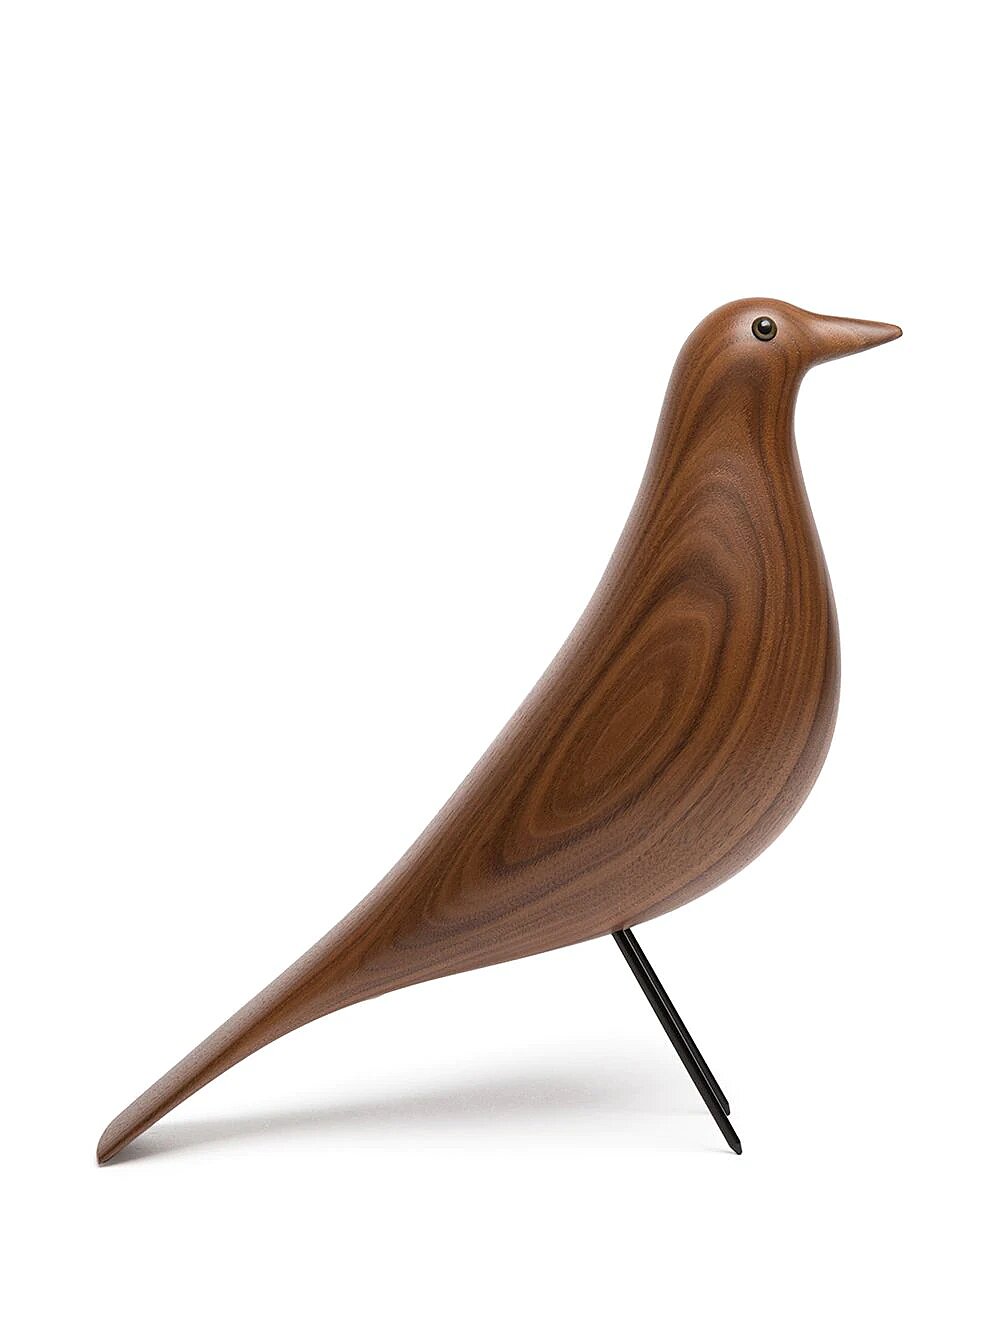 Фигурка Eames в форме птицы 21 272 руб.